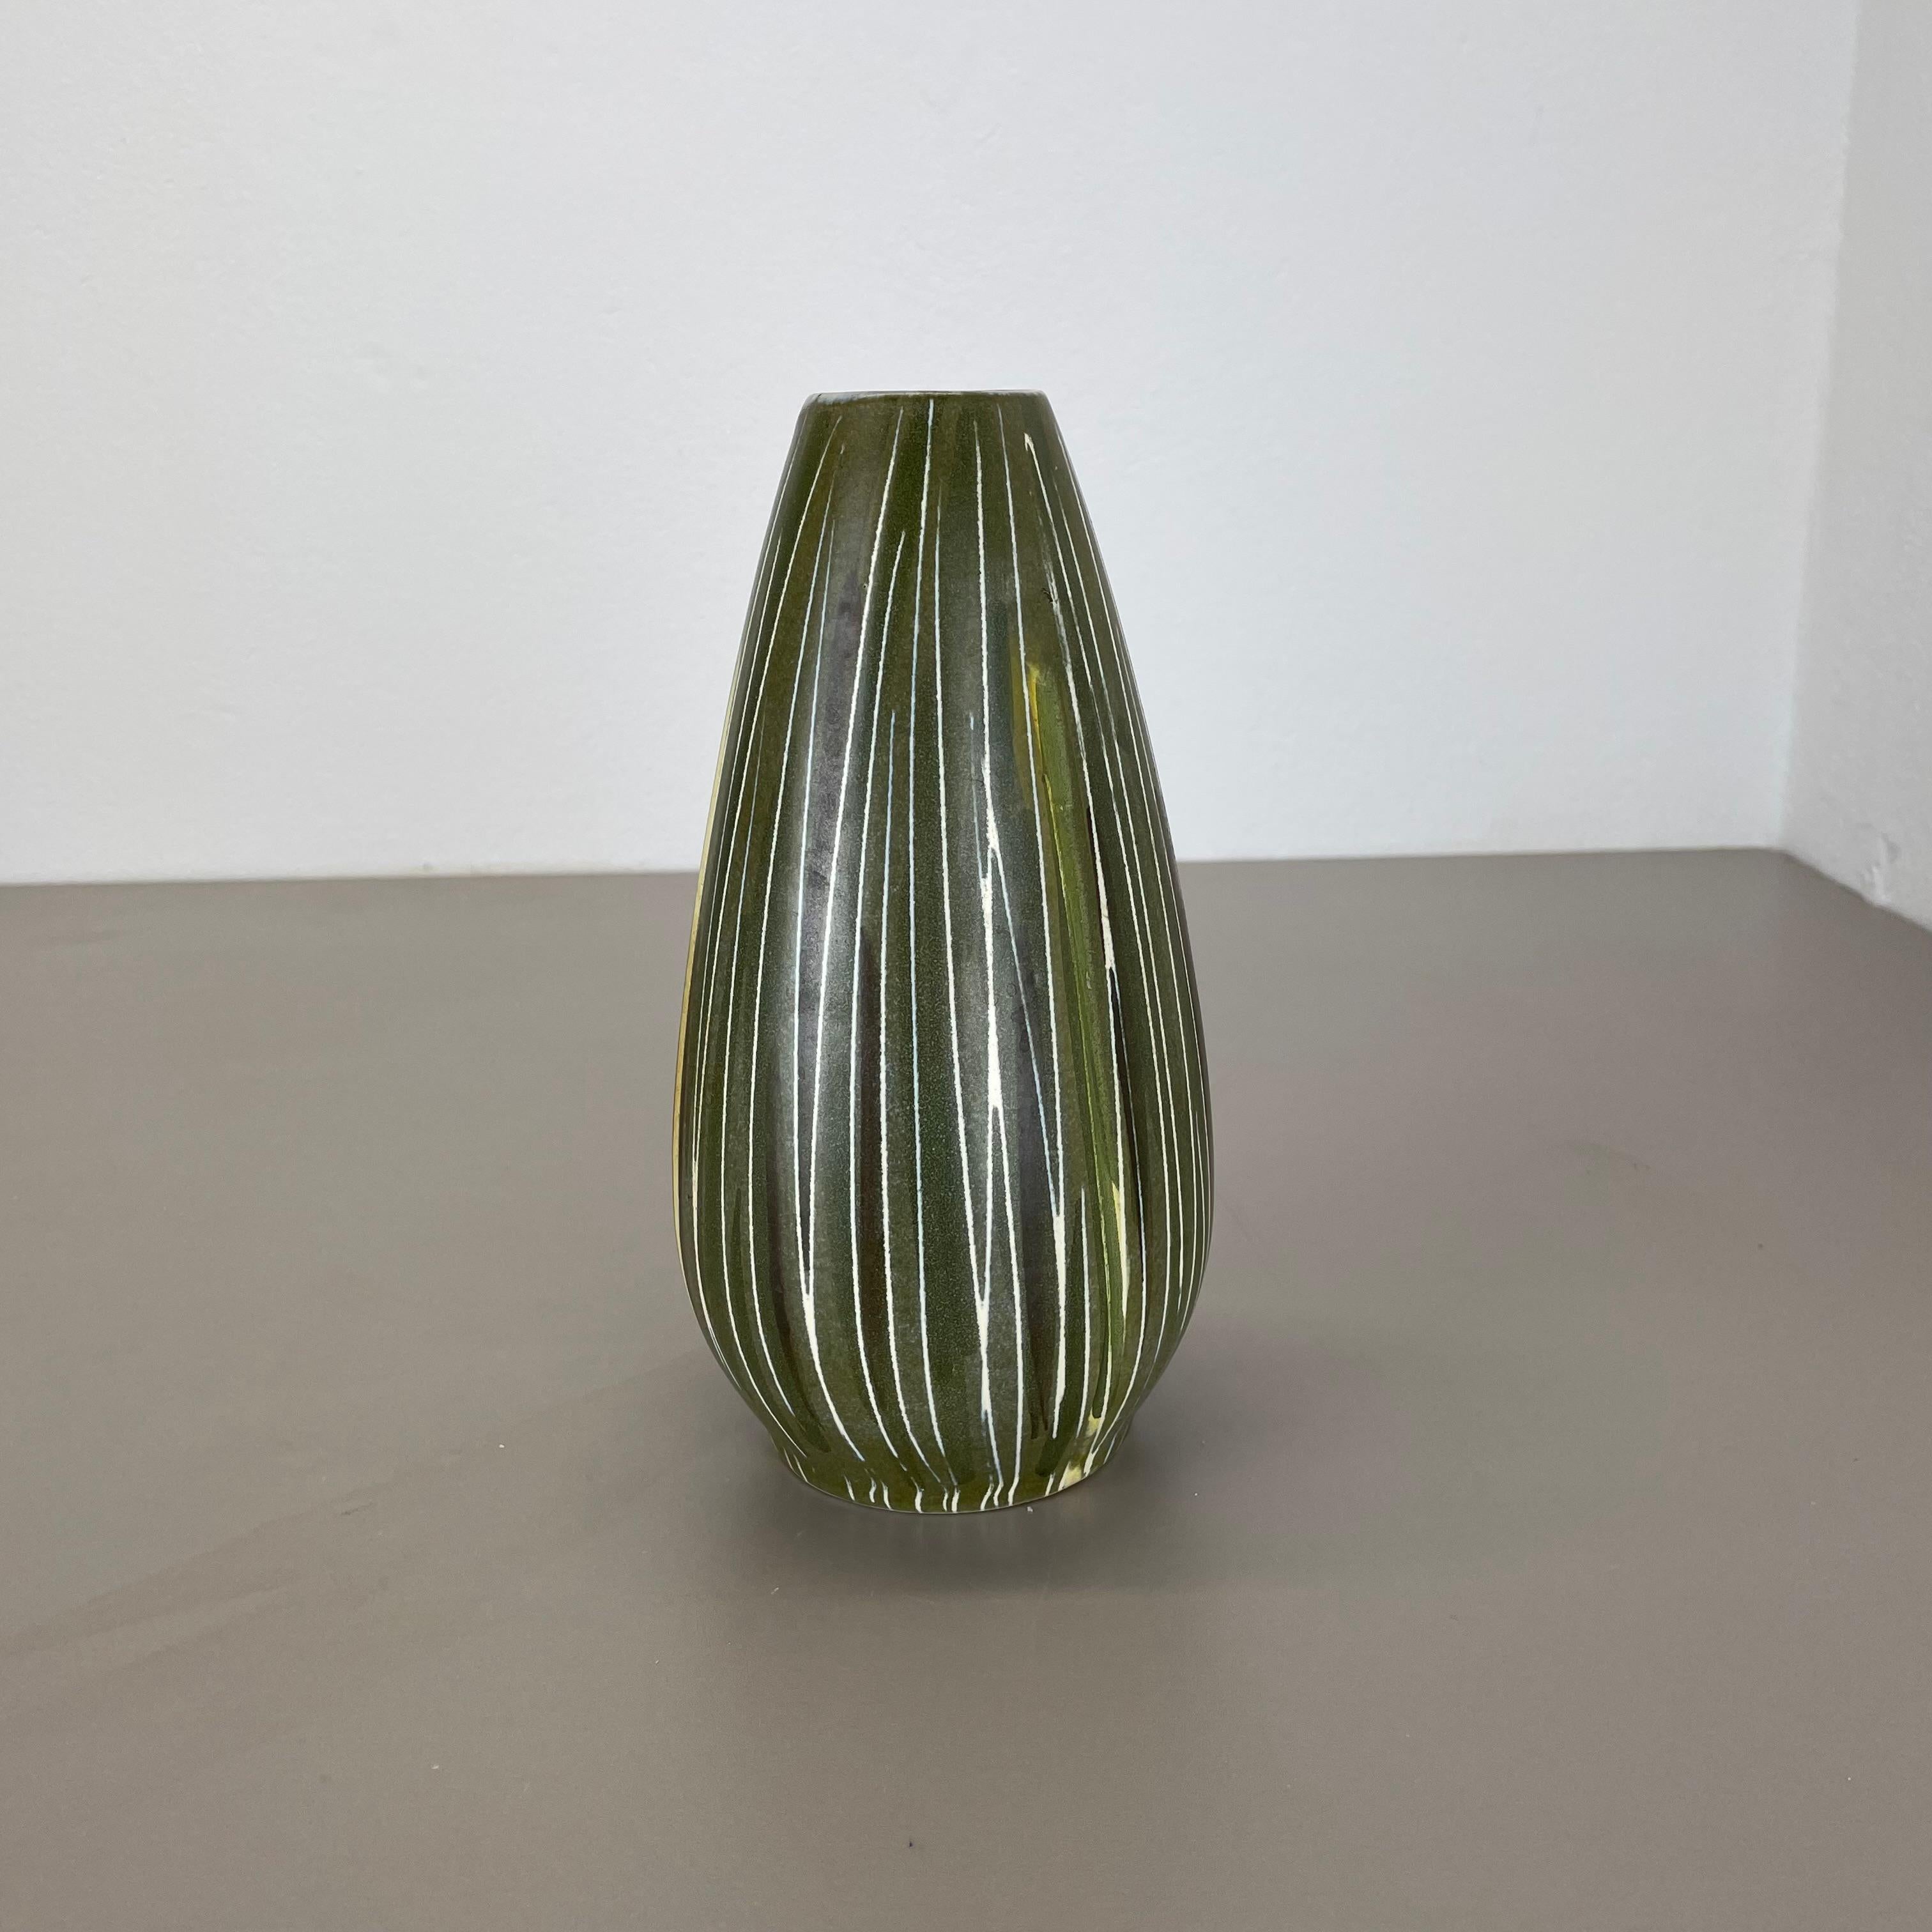 Artikel:

Vase aus Keramik


Produzent:

Übelacker Ceramics, Deutschland


Jahrzehnt:

1970s





Diese originale Vintage Pottery Vase wurde  hergestellt in den 1970er Jahren von Übelacker Ceramics, Deutschland. Seltene Form mit einer schönen